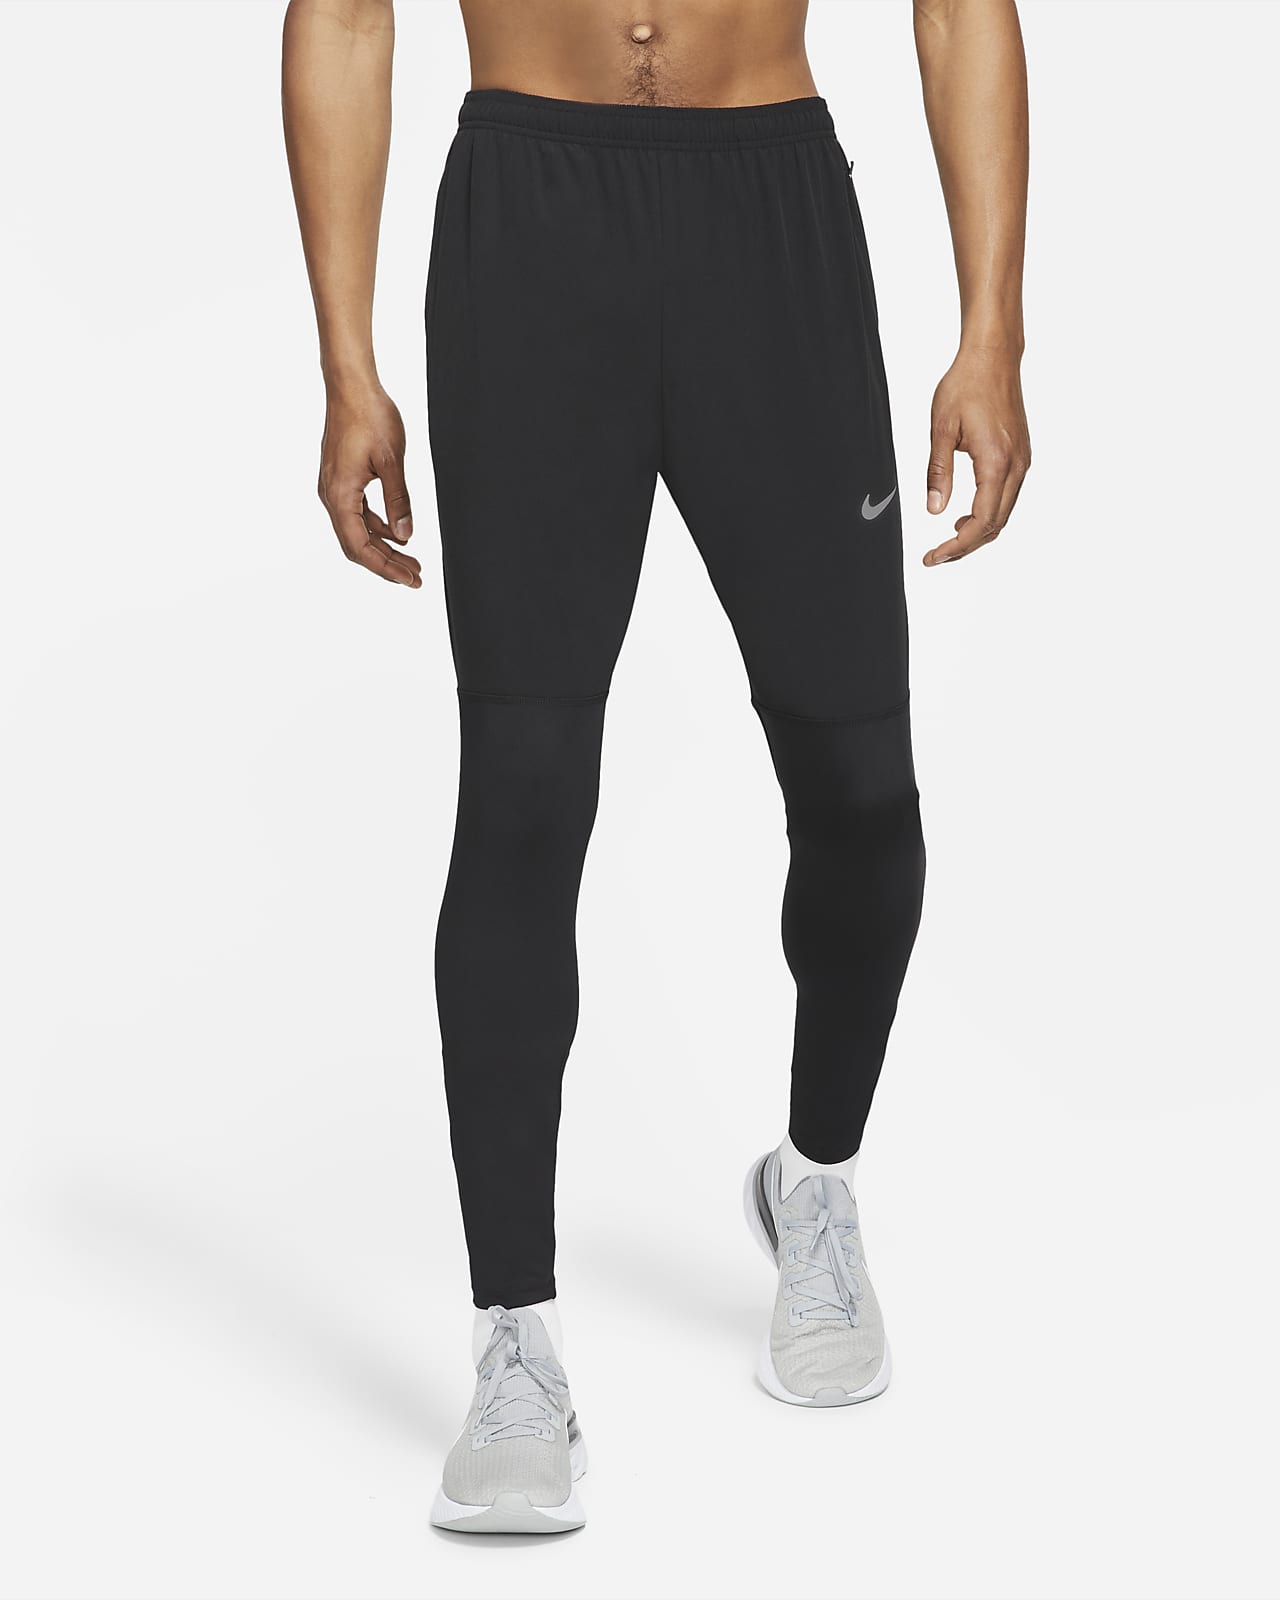 Nike Dri-FIT UV Challenger Men's Woven Hybrid Running Trousers